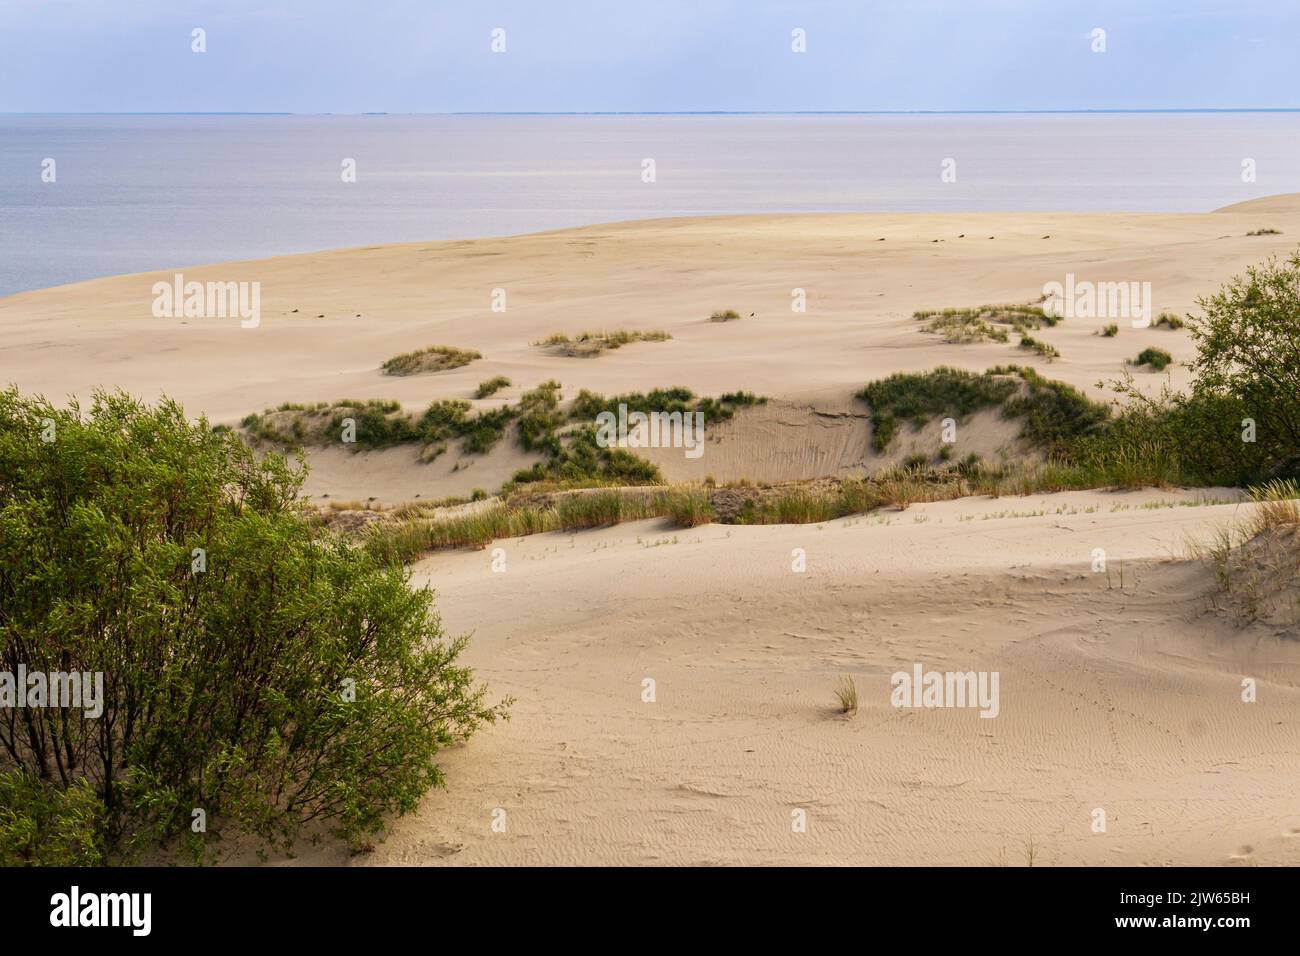 Spärliche Sanddünenvegetation der Kurischen Nehrung, Skyline, selektiver Fokus.Kaliningrad Region. Wüstendünen, blauer Himmel, Meeresoberfläche an der Küste der Ostsee Stockfoto